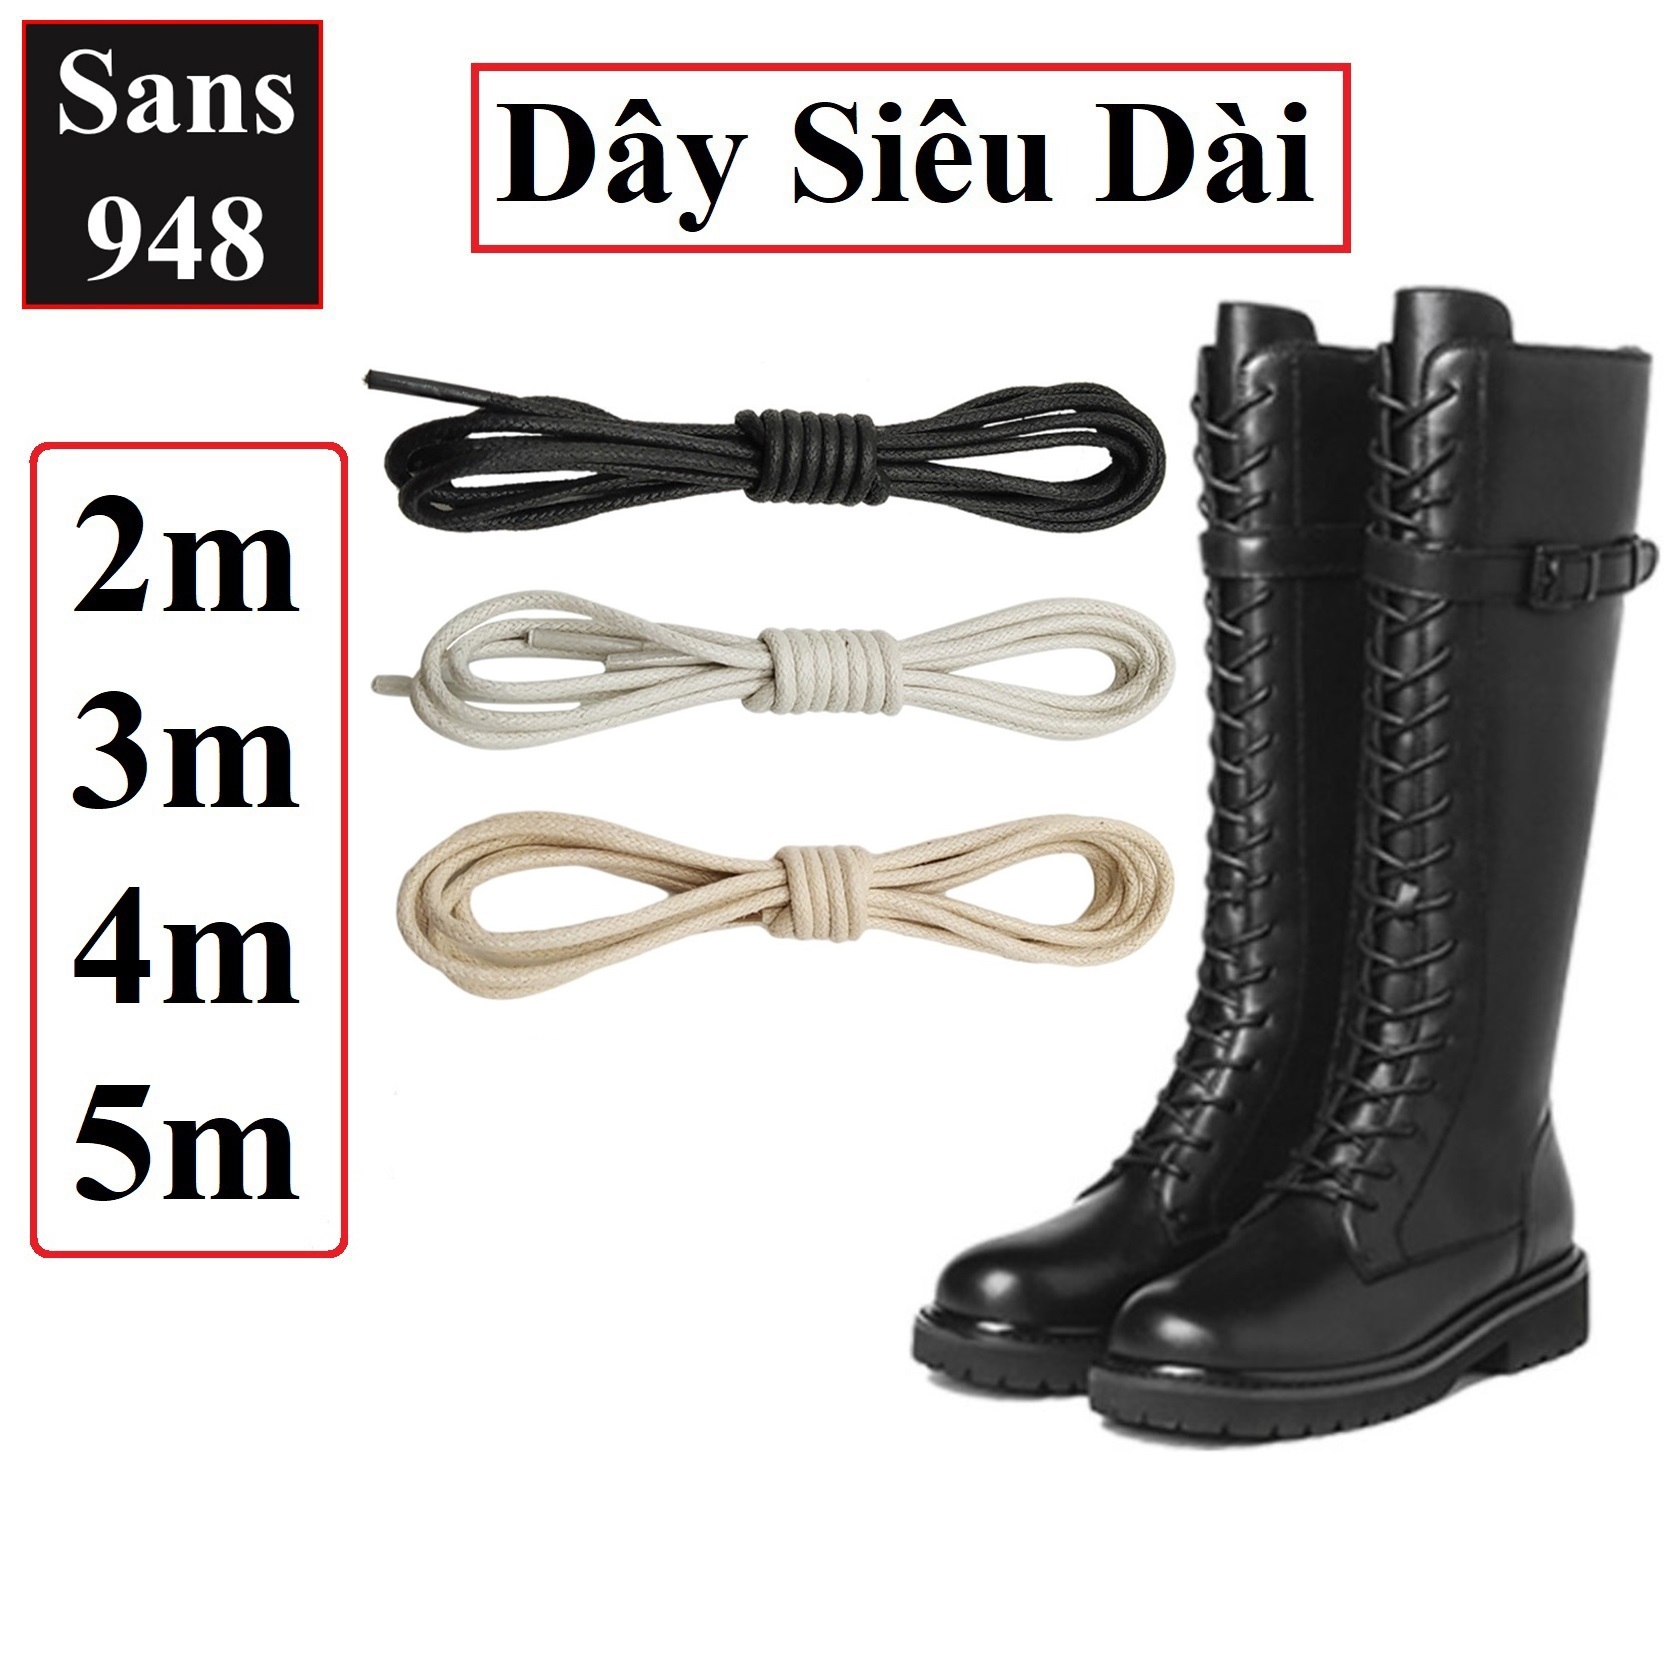 Dây giày boot đùi gối siêu dài tròn Sans948 2m 3m 4m 5m rộng 3mm cotton dù phủ sáp đen trắng be cột buộc cao cổ bốt